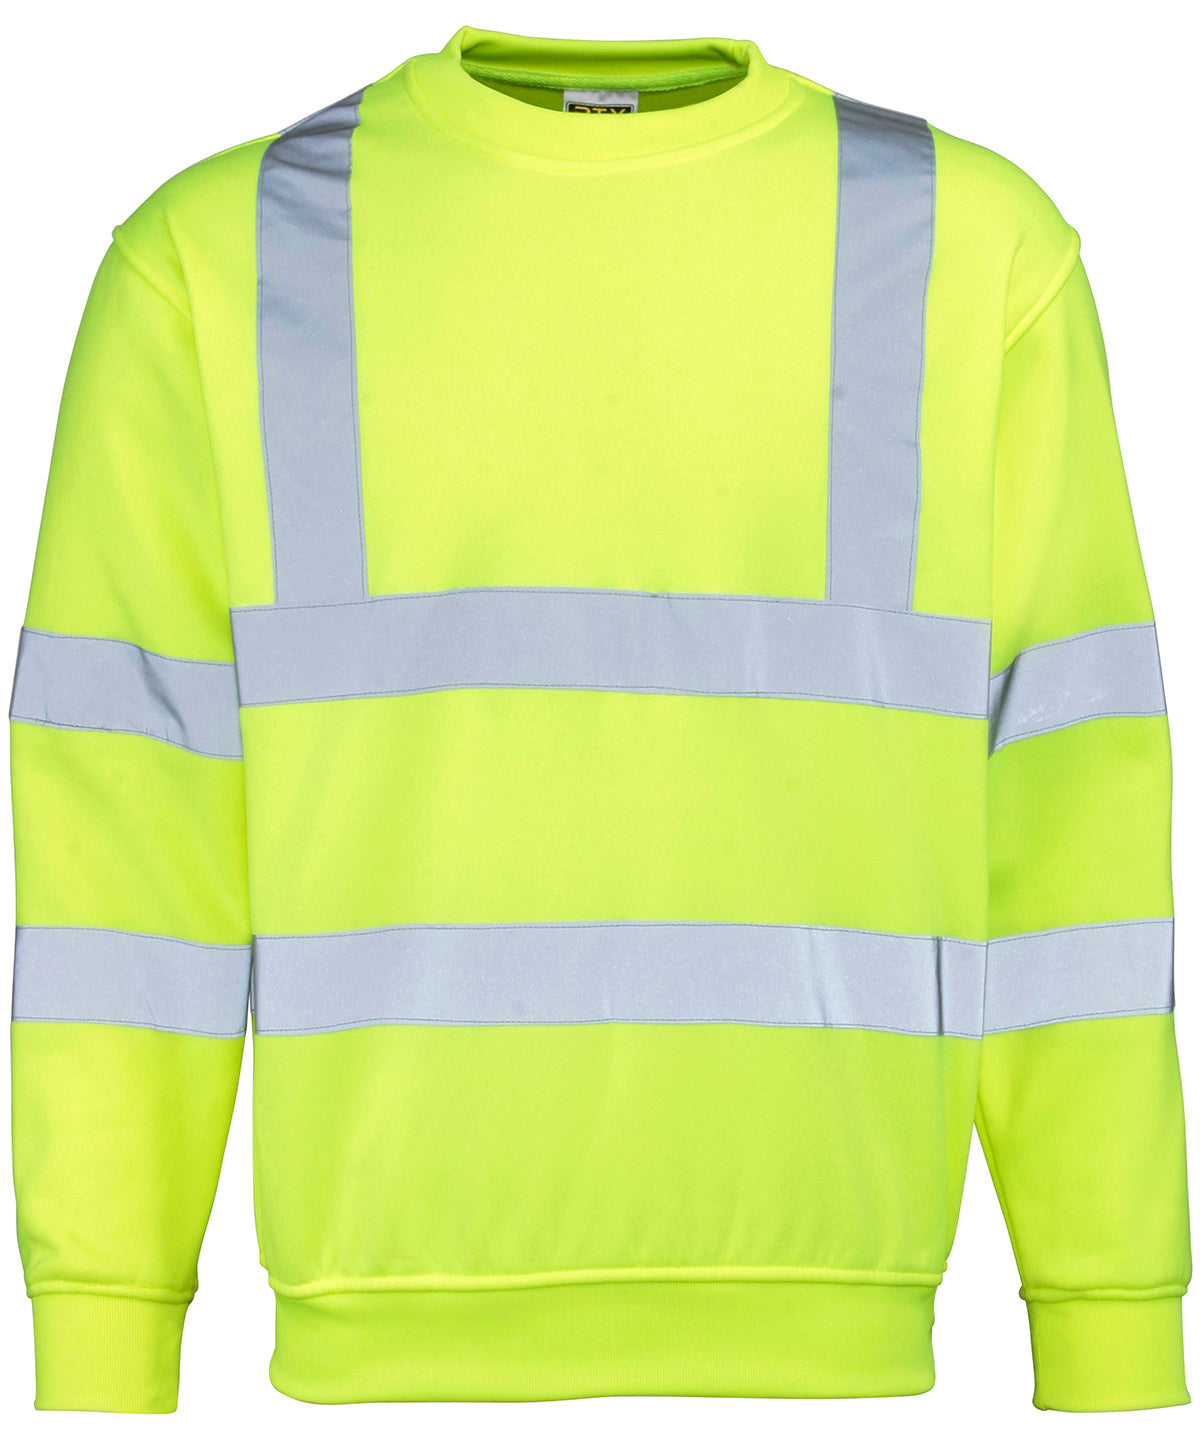 Háskólapeysur - High Visibility Sweatshirt